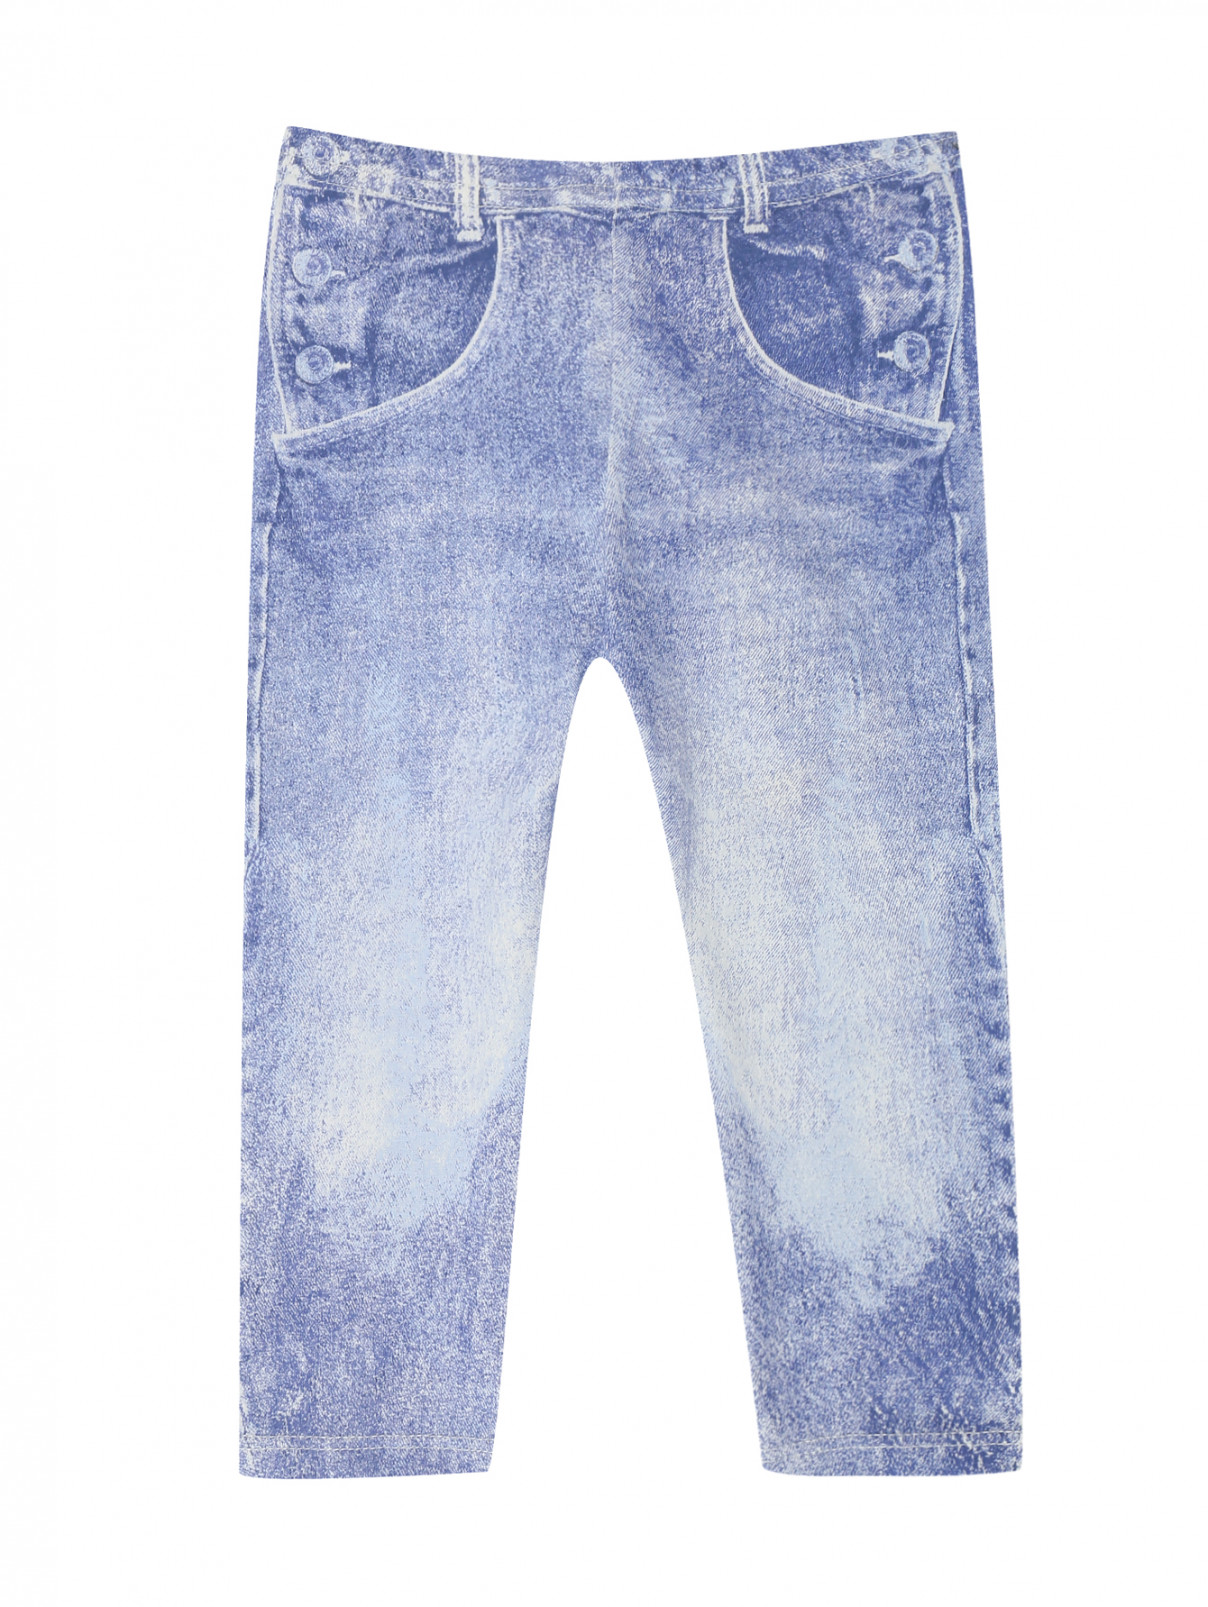 Трикотажные брюки с имитацией денима Junior Gaultier  –  Общий вид  – Цвет:  Синий